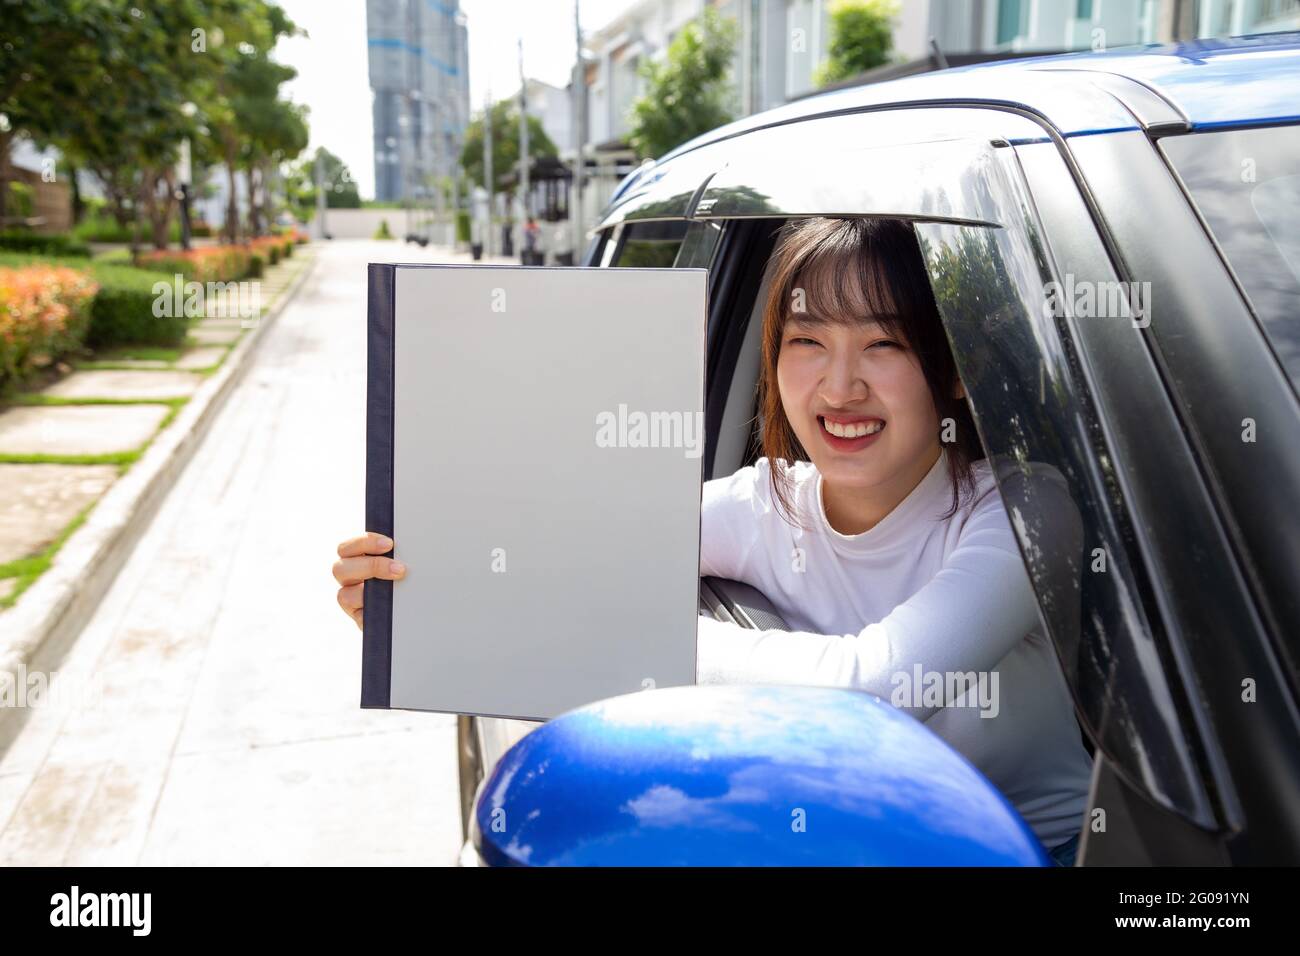 Mujer asiática joven que sostiene el libro de la póliza del coche y que se sienta en coche, concepto del seguro personal del accidente Foto de stock